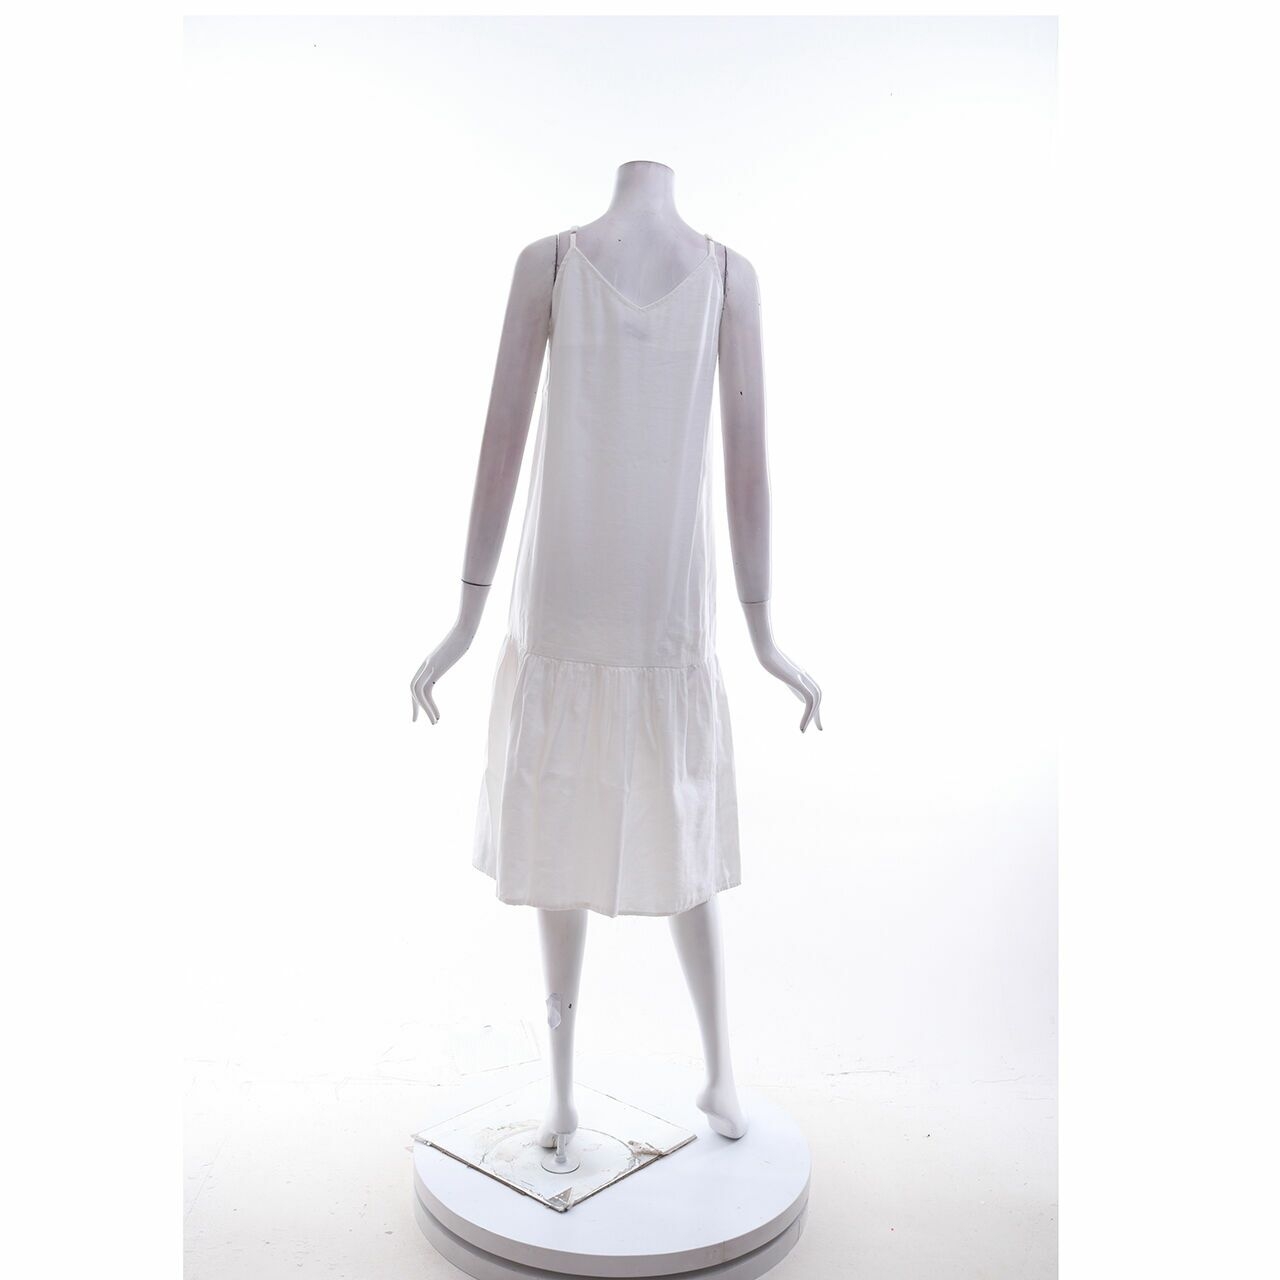 This is April White Midi Dress